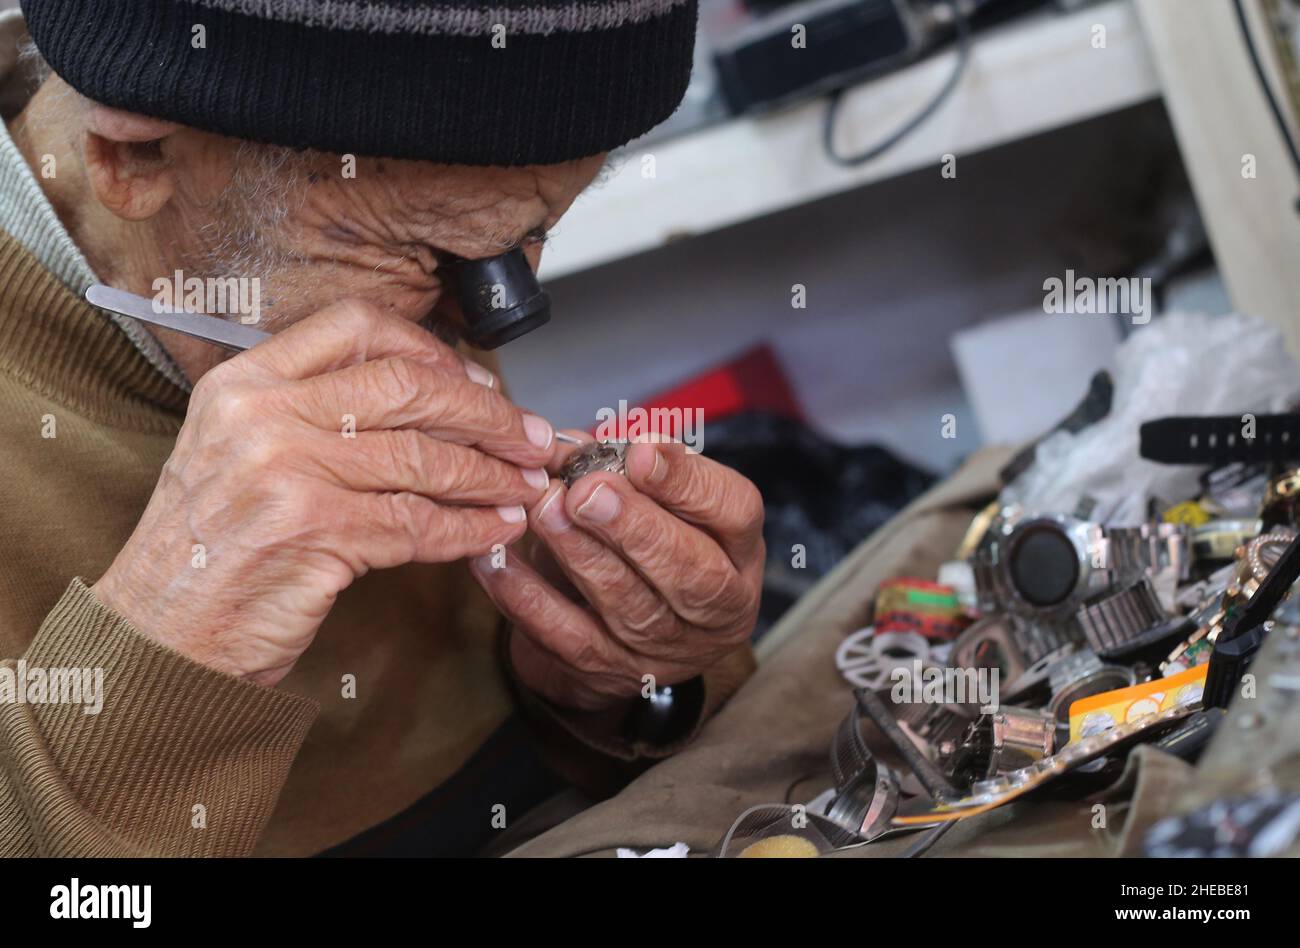 Gaza.10th janvier 2022.Le 10 janvier 2022, le palestinien Ibrahim Al-Hams travaille à son atelier de réparation de montres dans la ville de Rafah, dans le sud de la bande de Gaza.Al-Hams, 82 ans, a commencé sa carrière comme réparateur de montres il y a 65 ans.Credit: Khaled Omar/Xinhua/Alamy Live News Banque D'Images